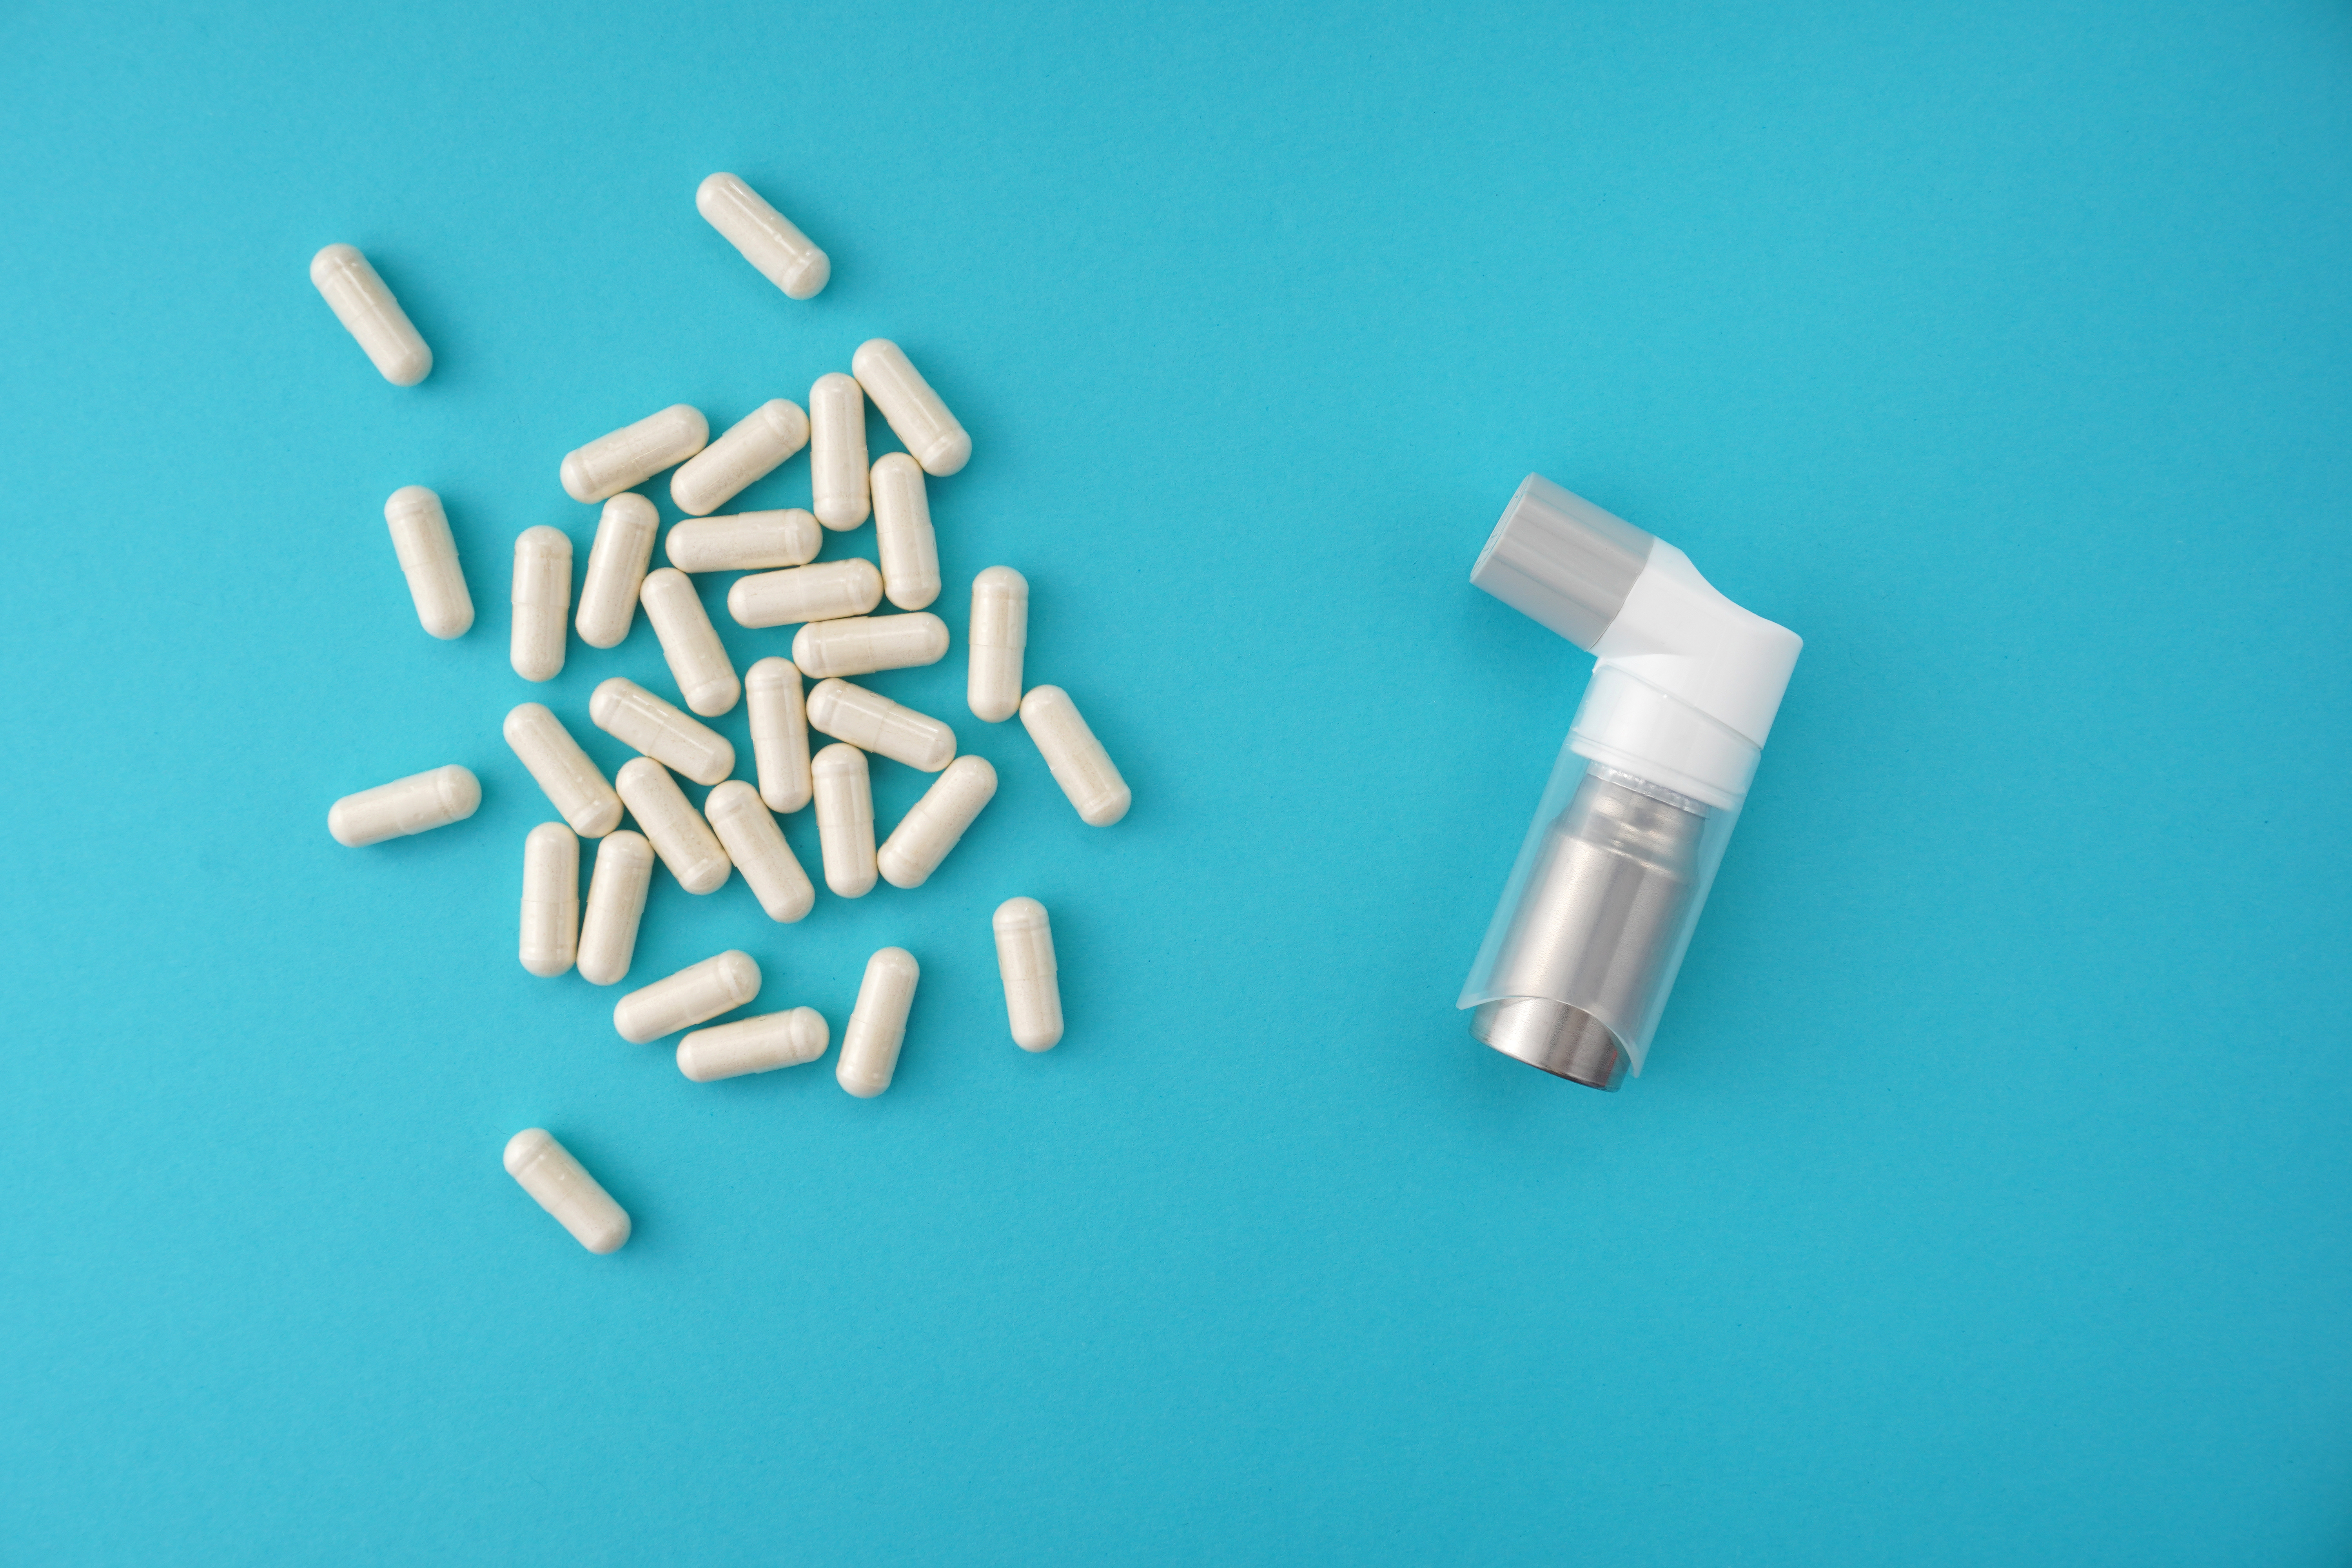 Les antibiotiques altèrent durablement le microbiote, ce qui pourrait accroître le risque d'asthme. © Яна Хоружева, Adobe Stock